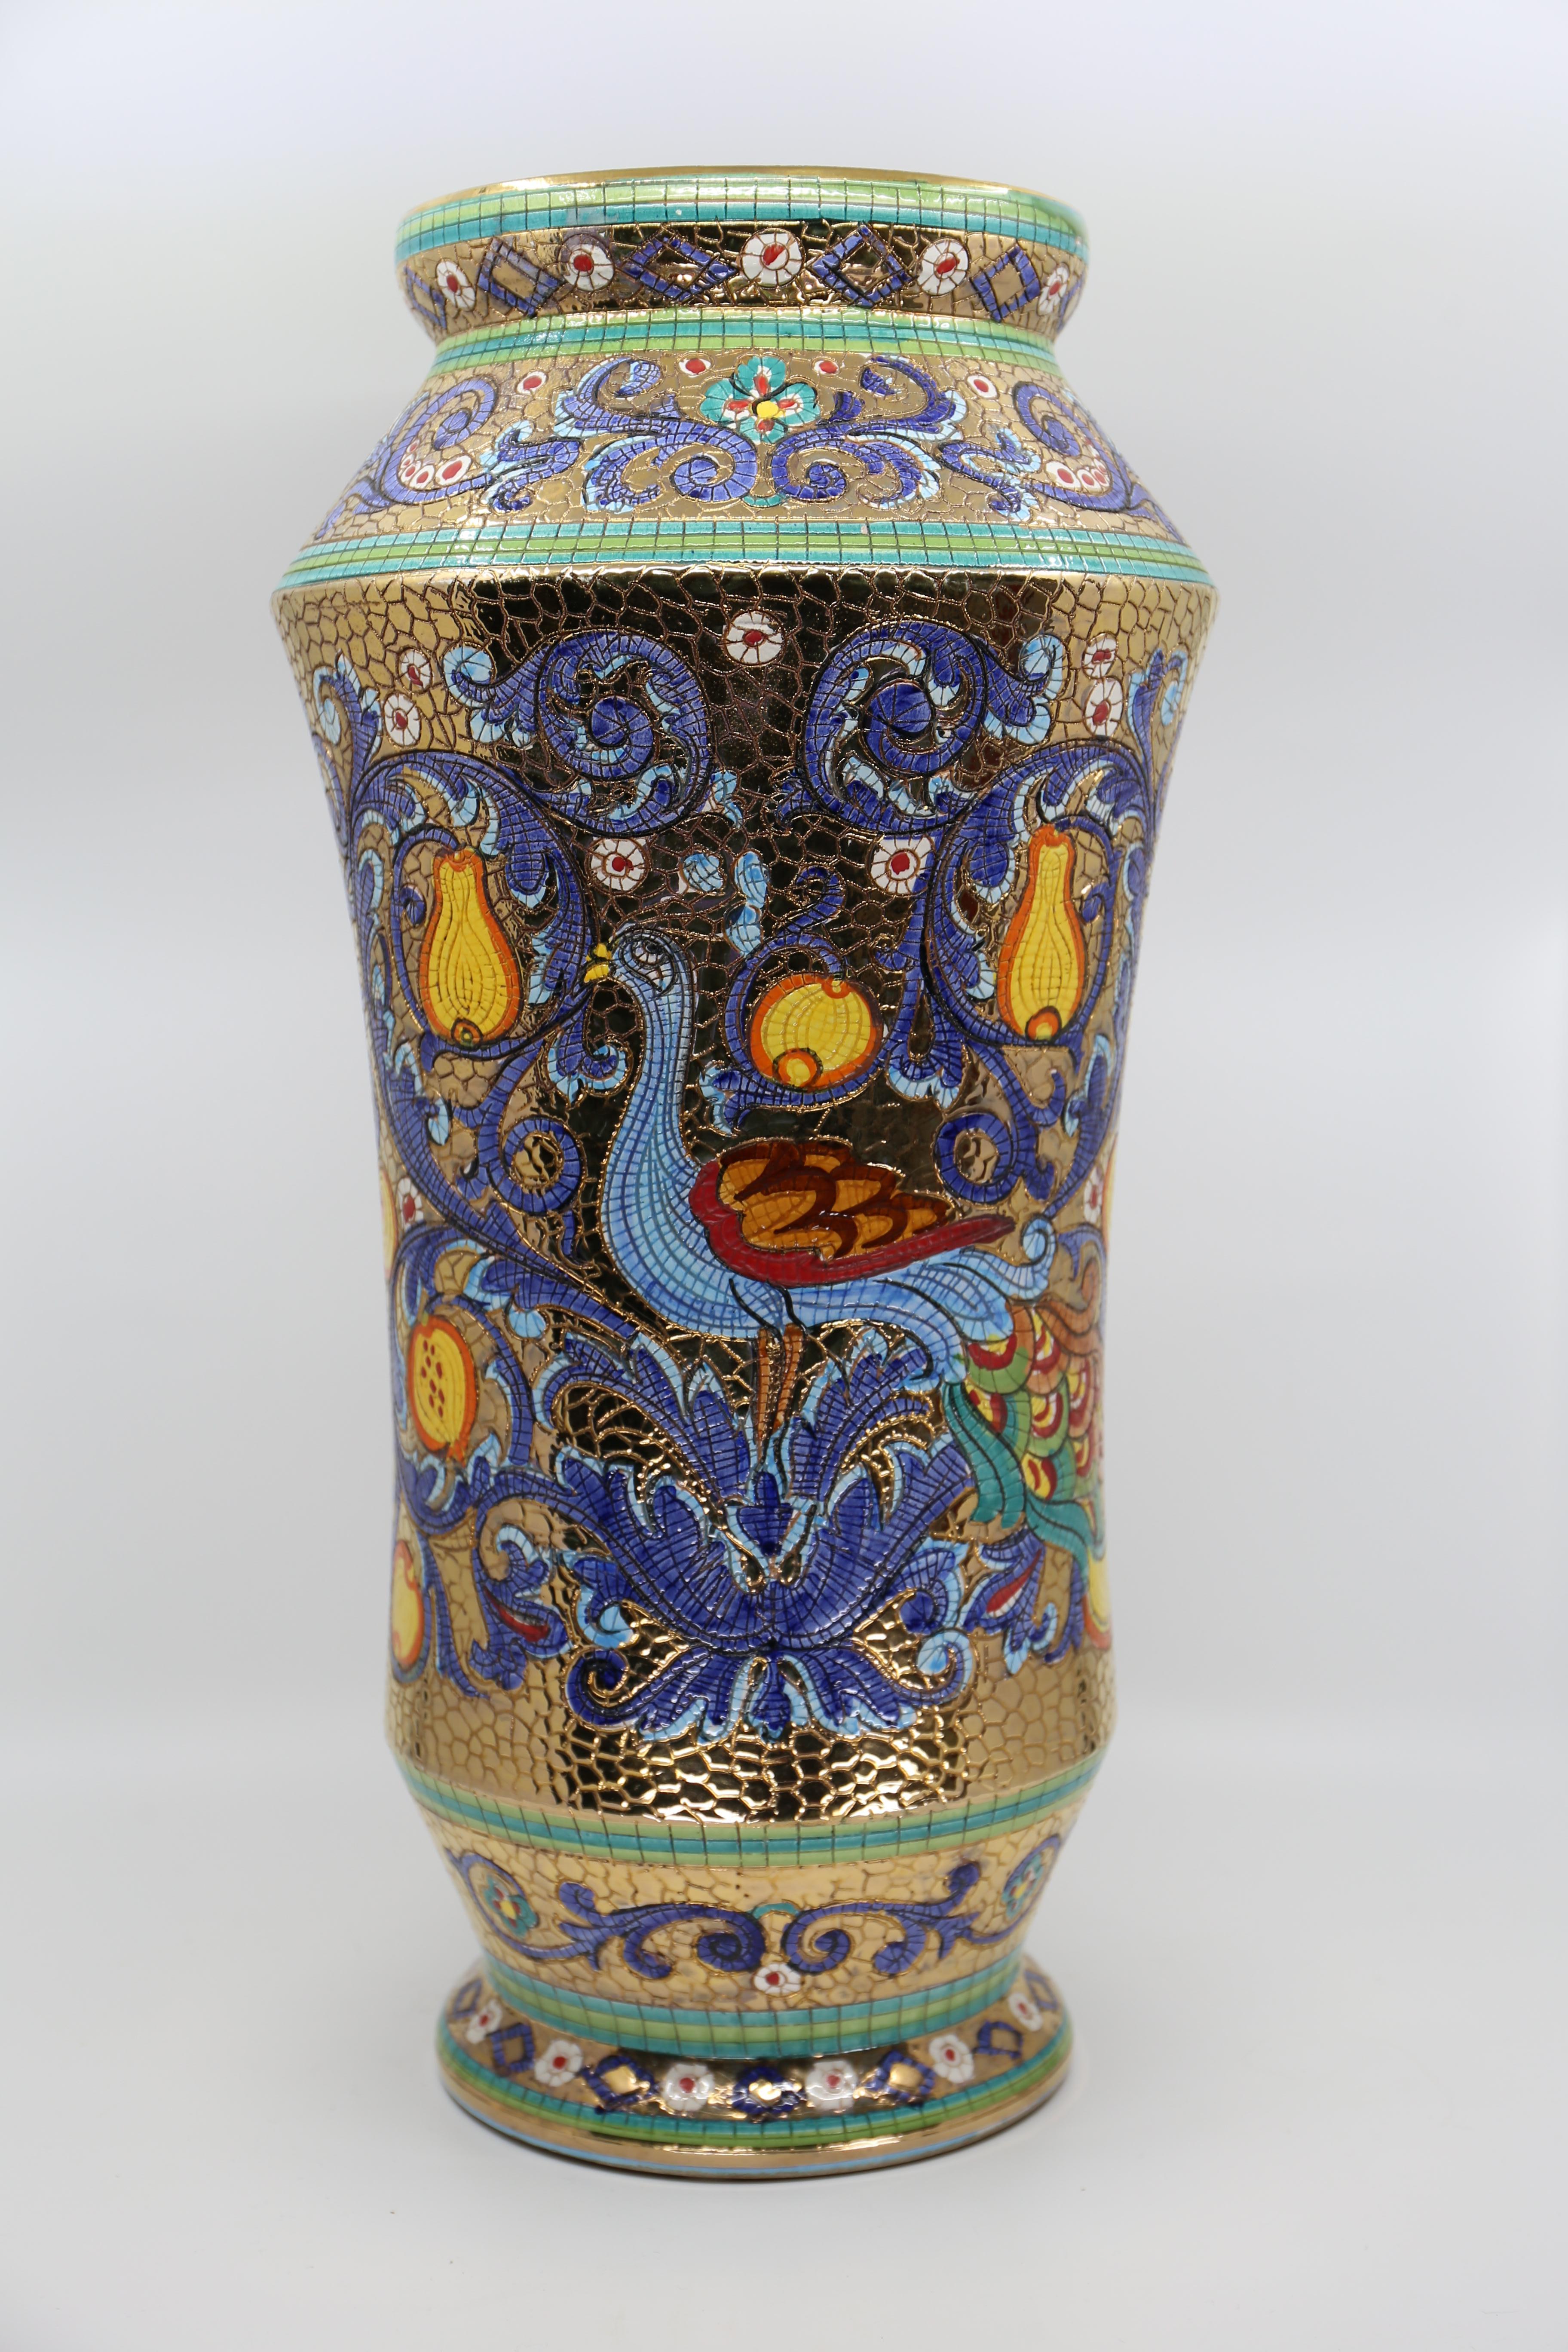 Grand vase en mosaïque de majolique, décoré à la main à la feuille d'or pur.

Vase italien vintage en mosaïque de Deruta, le design est une représentation de l'impératrice Théodora, épouse byzantine du sixième siècle de l'empereur Justinien,